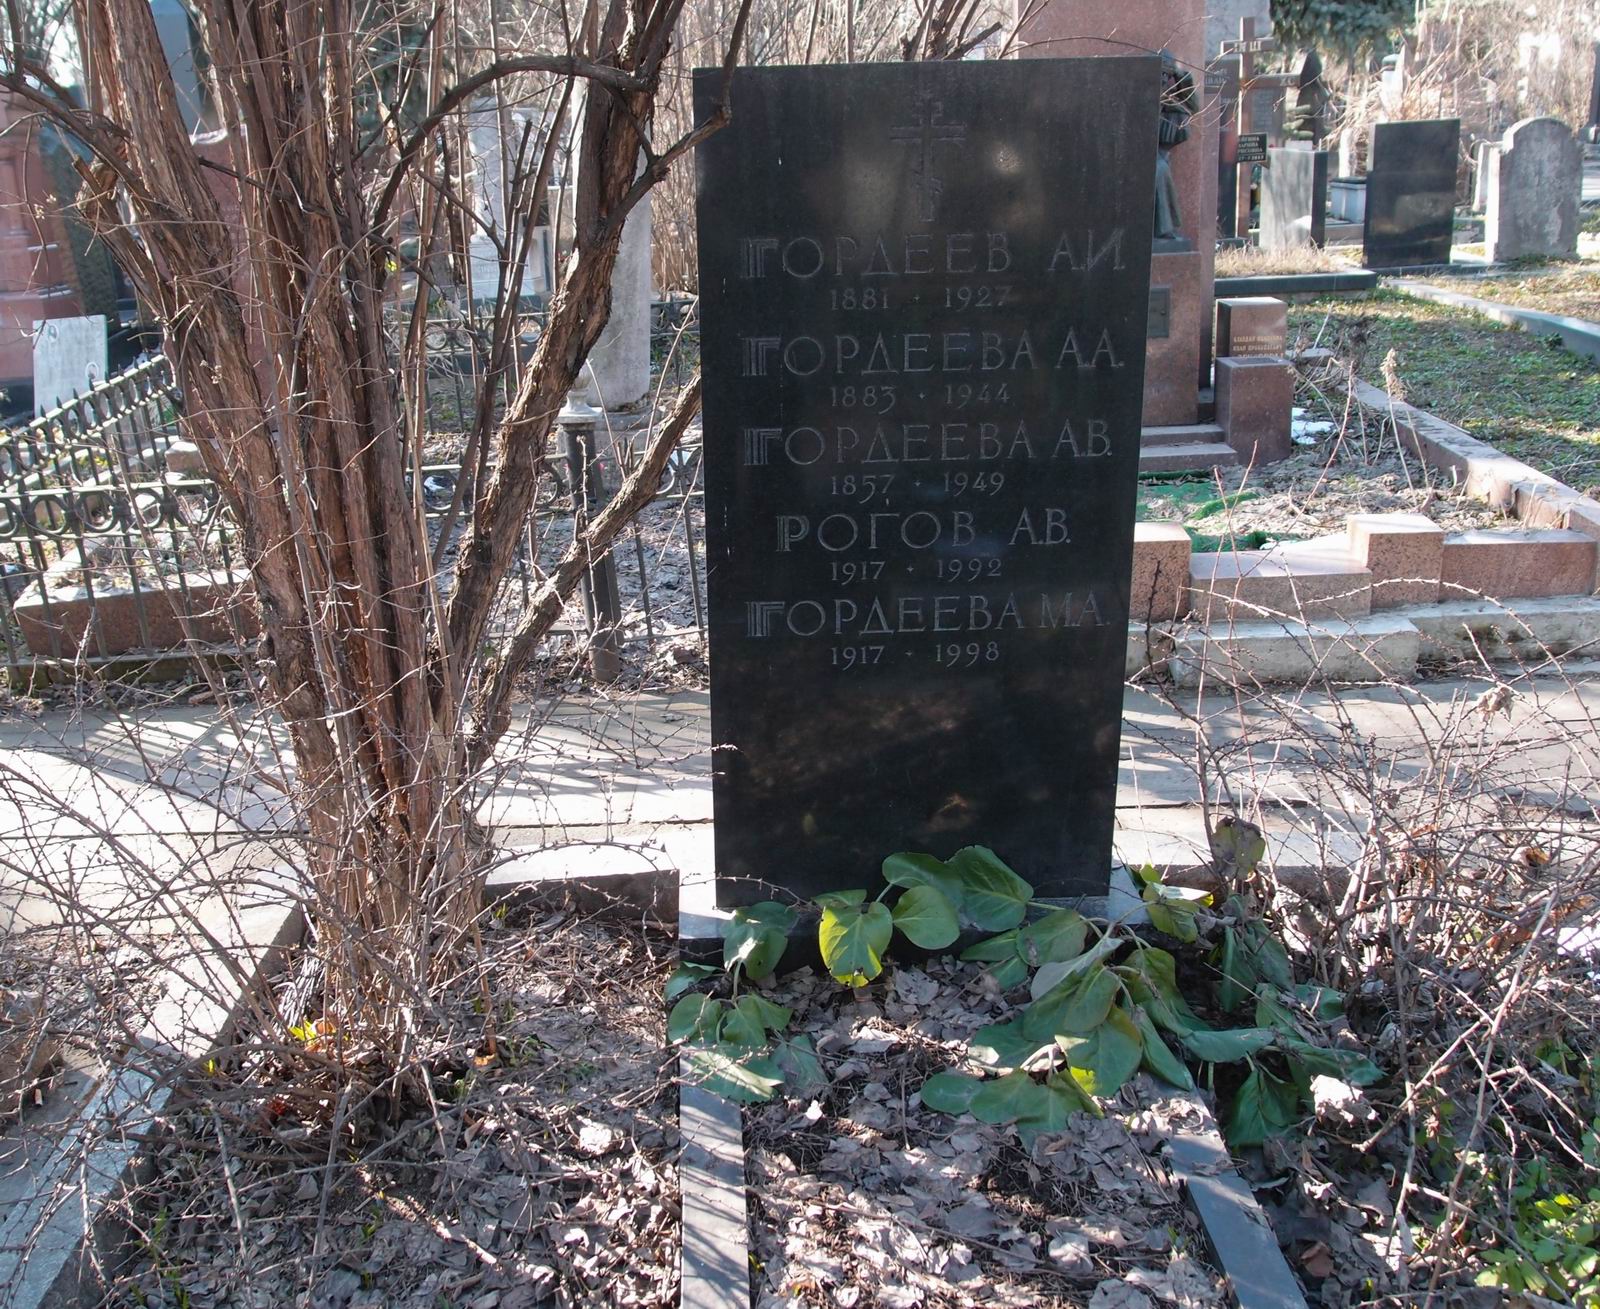 Памятник на могиле Гордеева А.И. (1881-1927), на Новодевичьем кладбище (2-23-7).